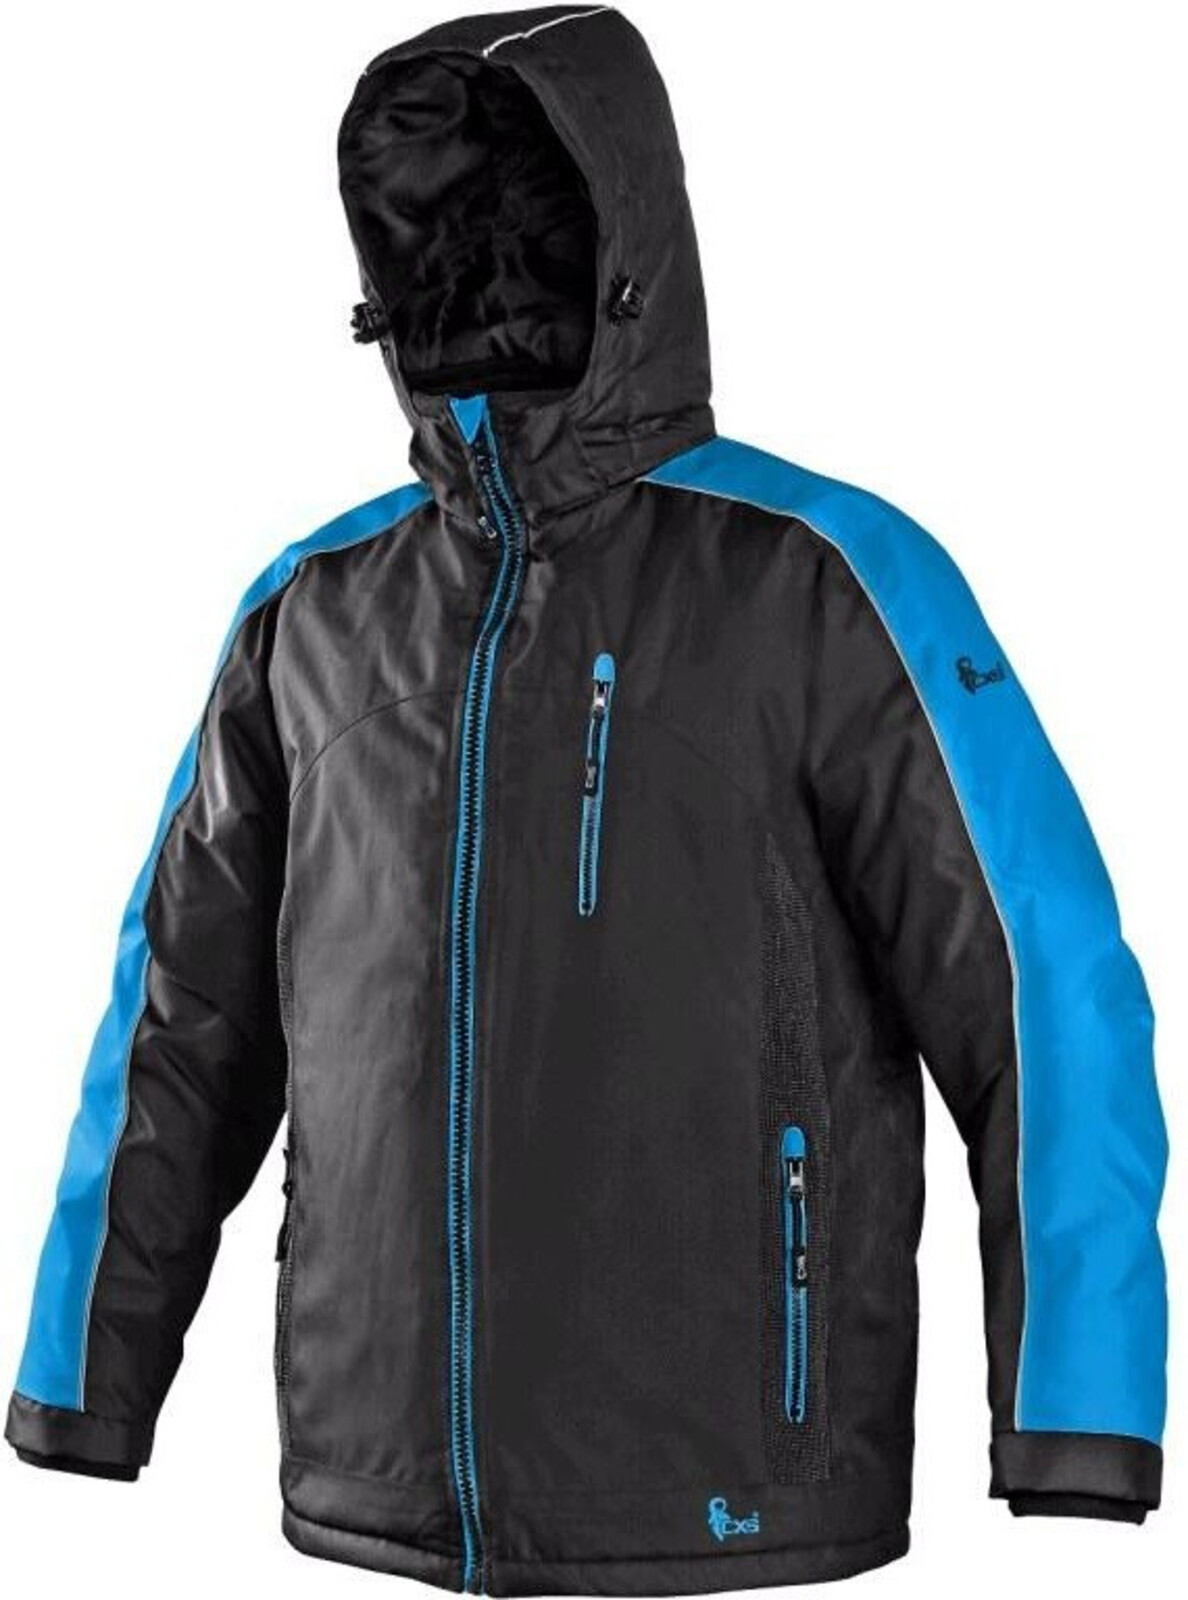 Pánska zimná bunda CXS Brighton - veľkosť: S, farba: čierna/modrá